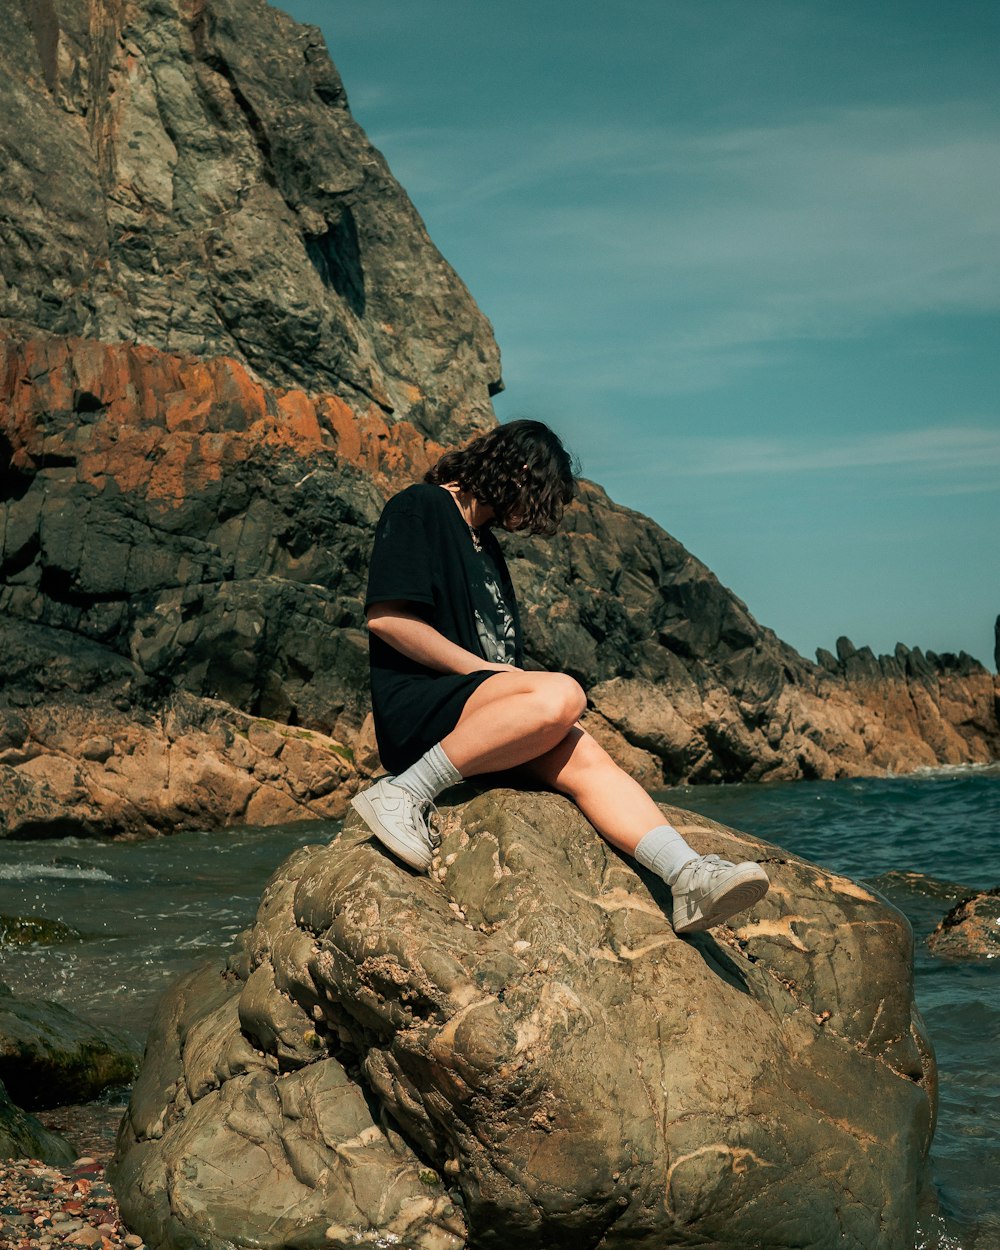 검은 셔츠와 흰색 반바지를 입은 여자가 낮에 수역 근처의 바위에 앉아 있습니다.